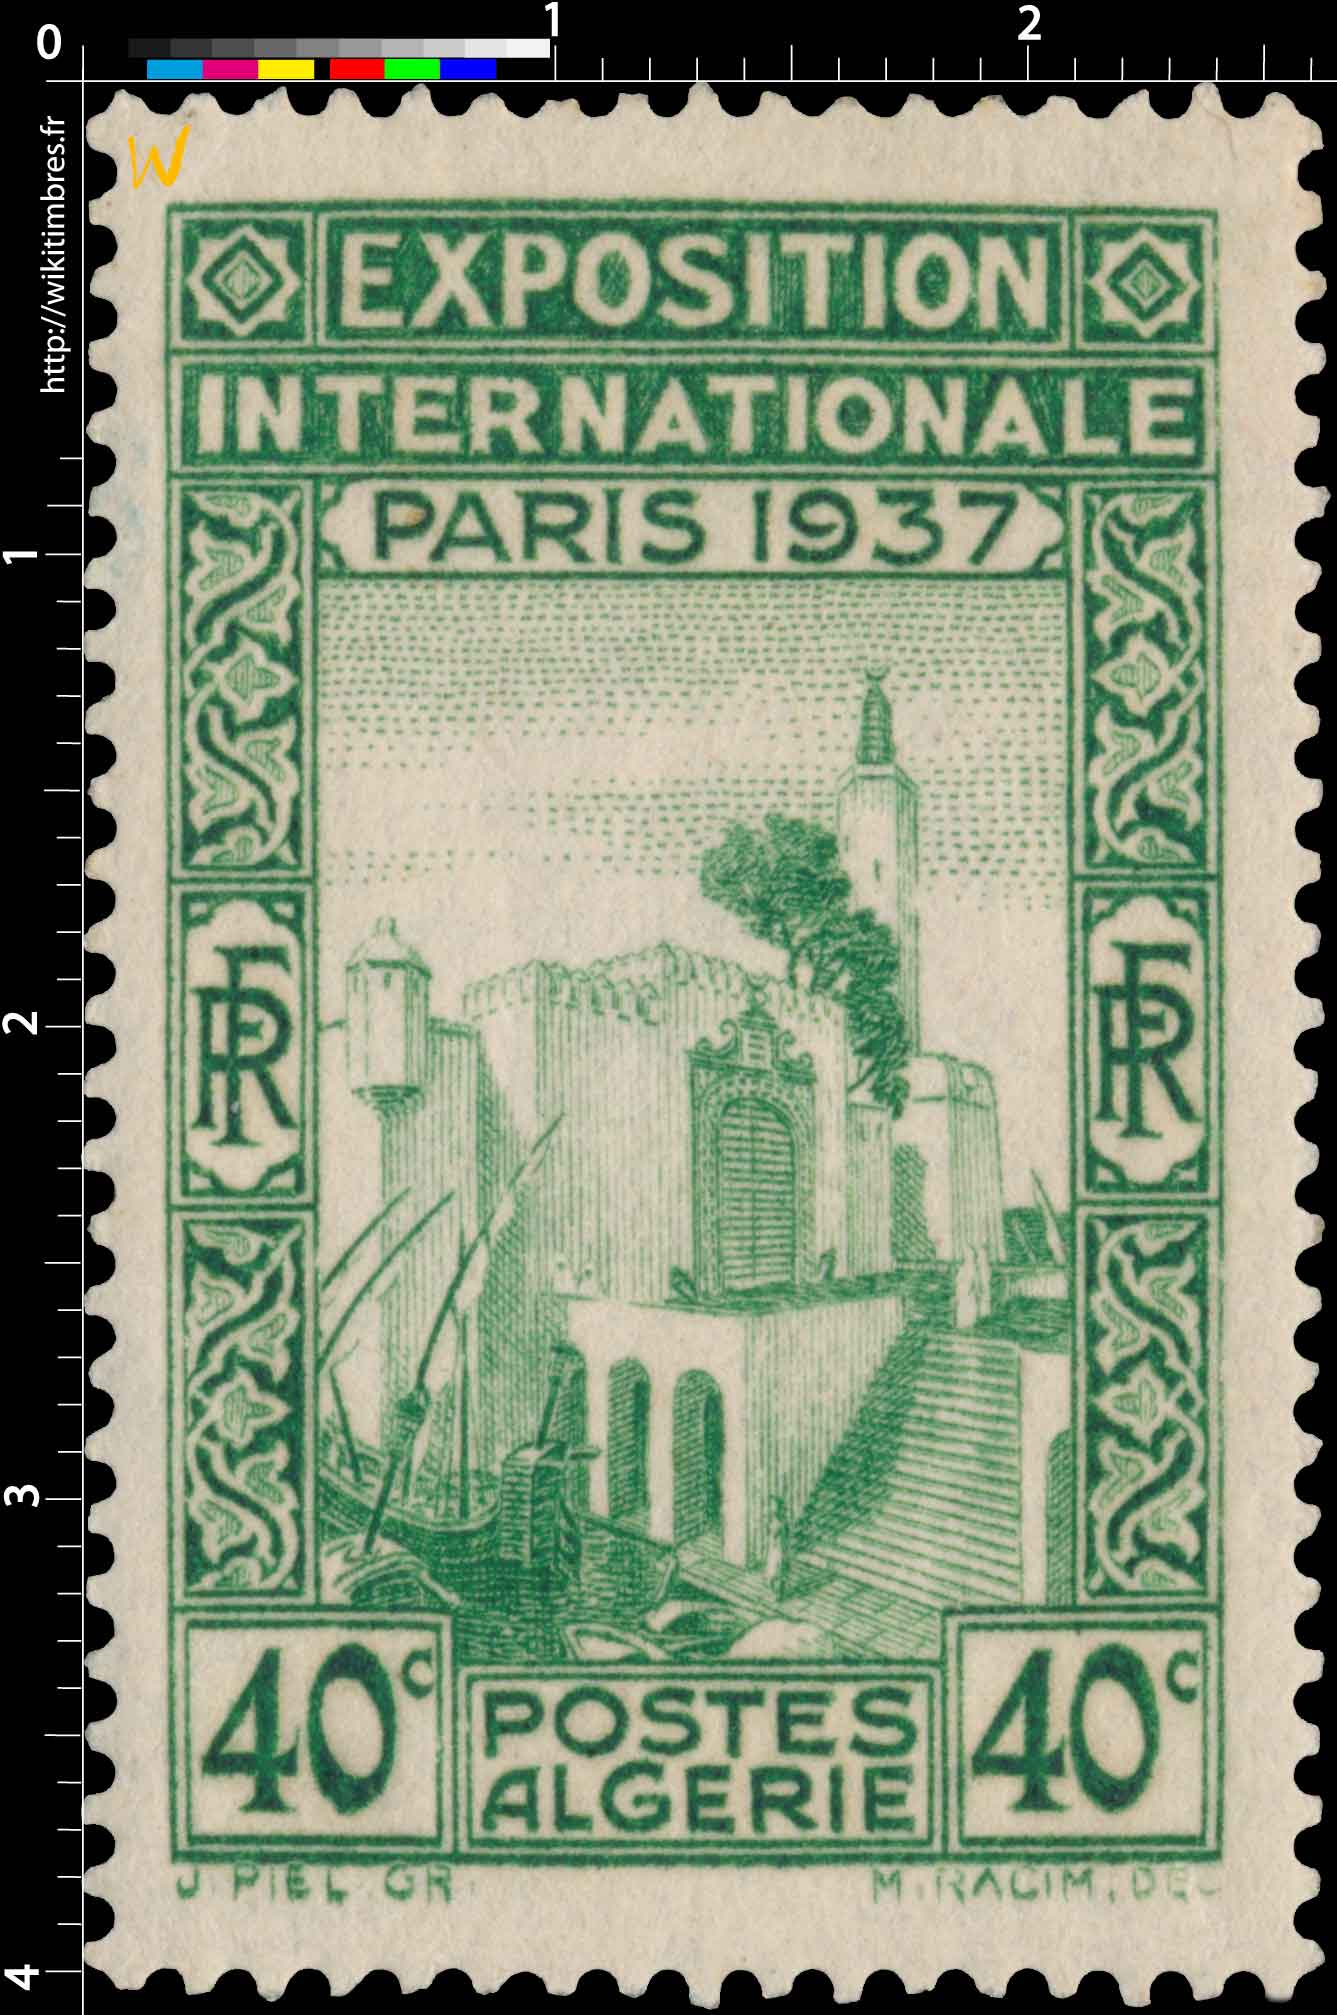 Algérie - Exposition  internationale Paris 1937